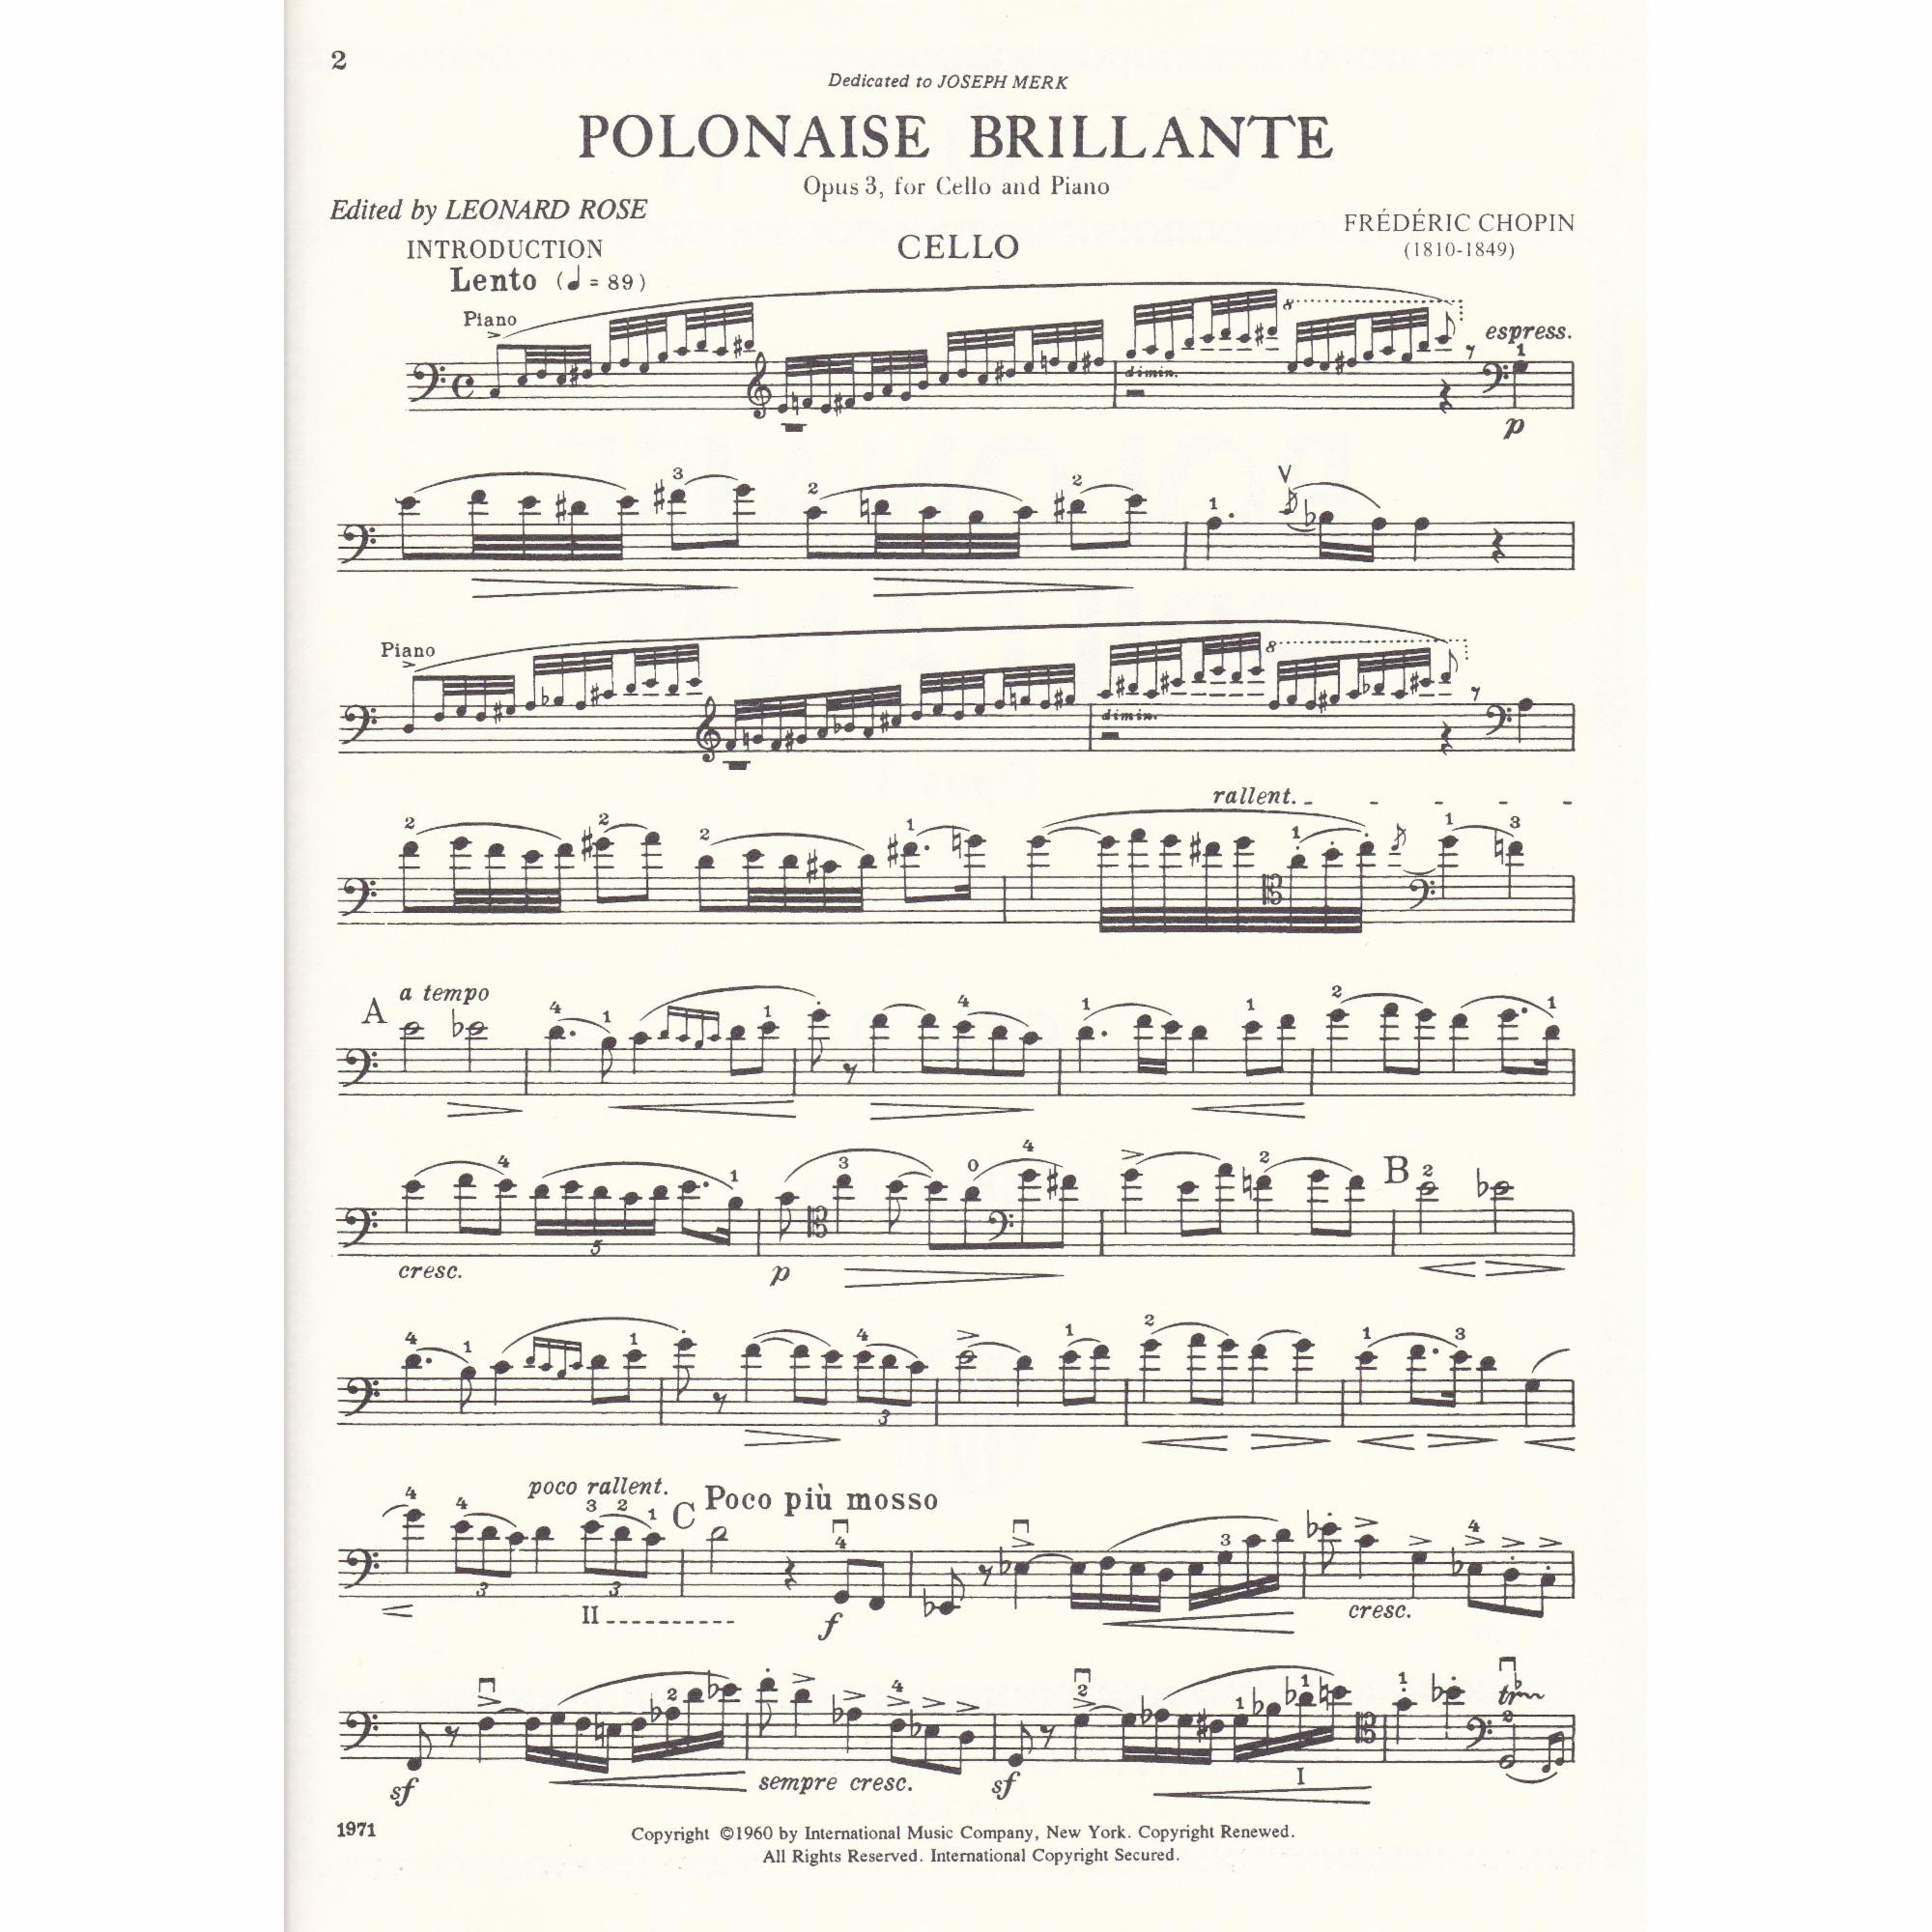 Polonaise Brillante for Cello and Piano, Op. 3